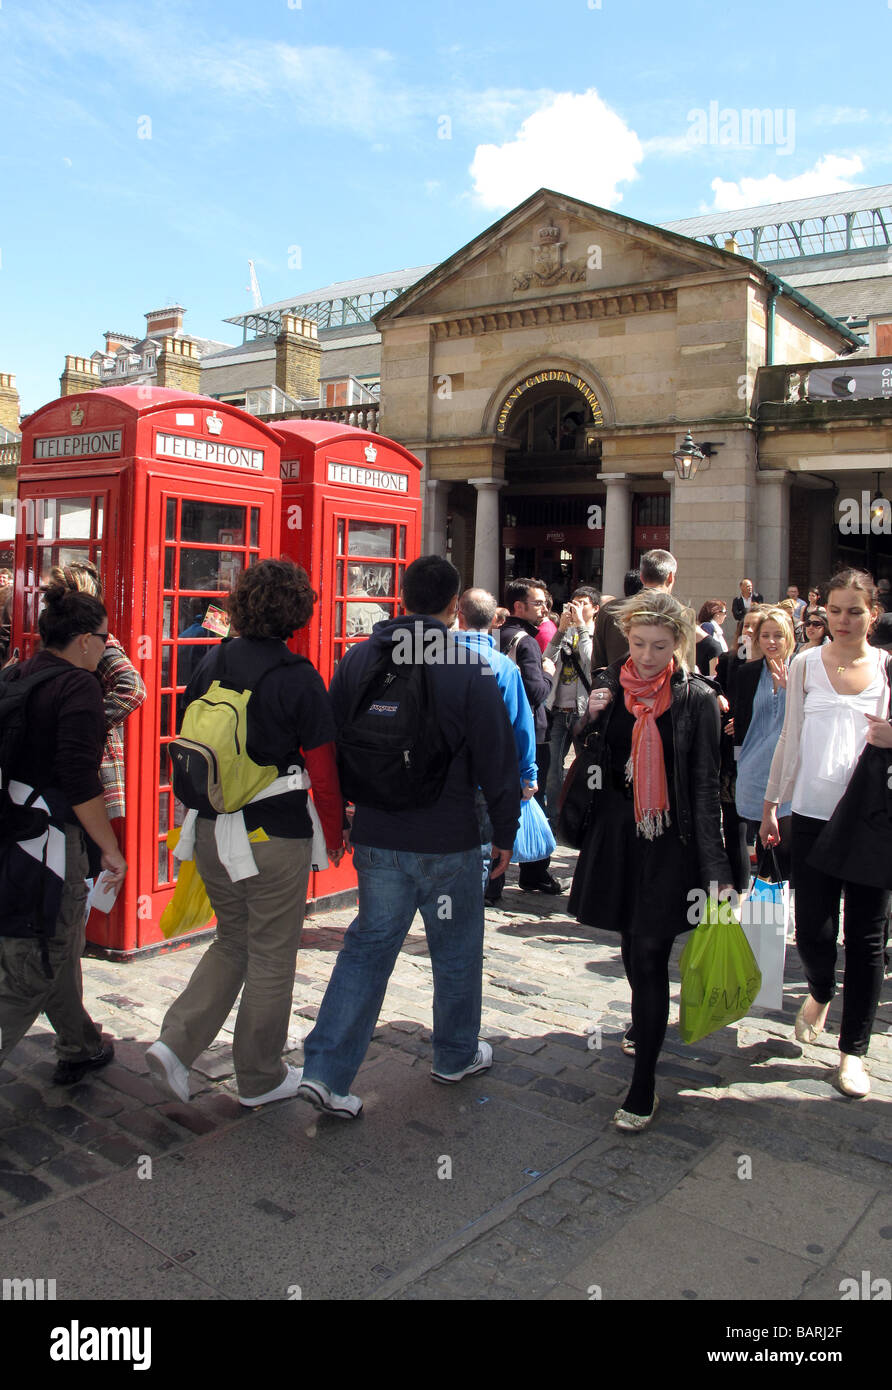 La folla di turisti e amanti dello shopping a piedi passato cabine telefoniche rosse sotto il sole al di fuori del mercato di Covent Garden di Londra. Foto Stock